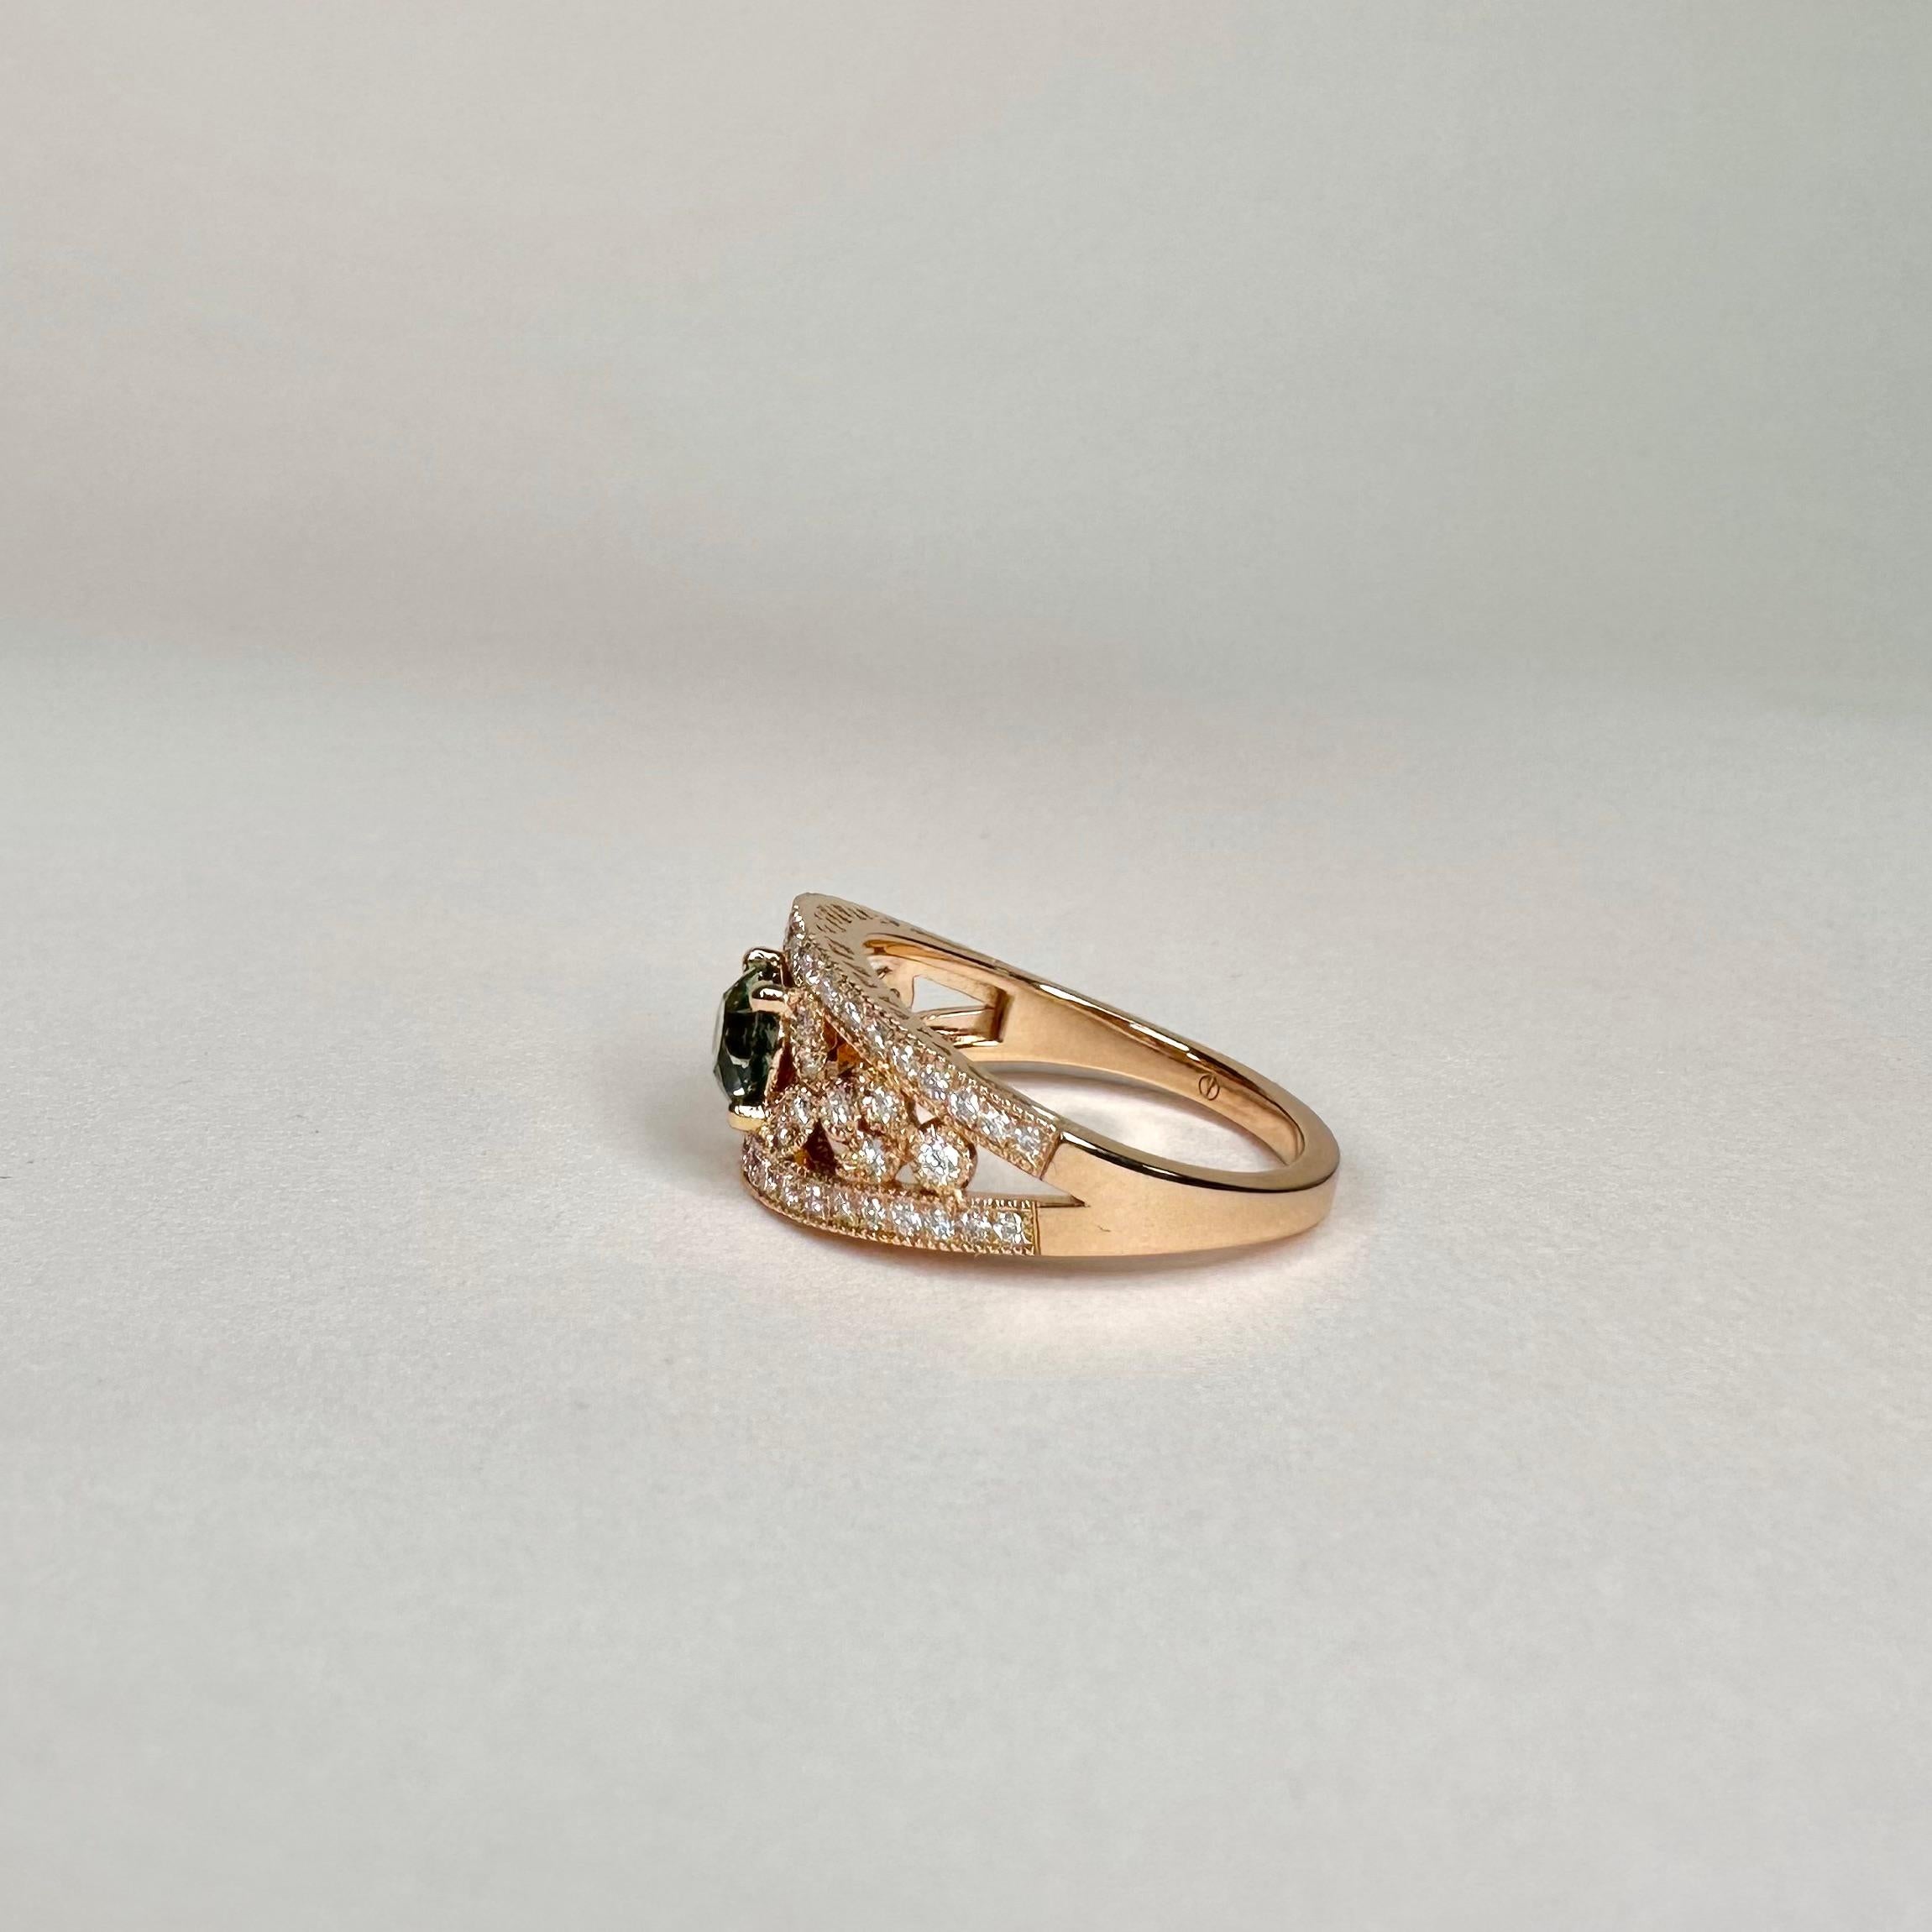 For Sale:  18k Rose Gold Laurel Leaf Design Blue Green Sapphire Ring Set with Diamonds 4